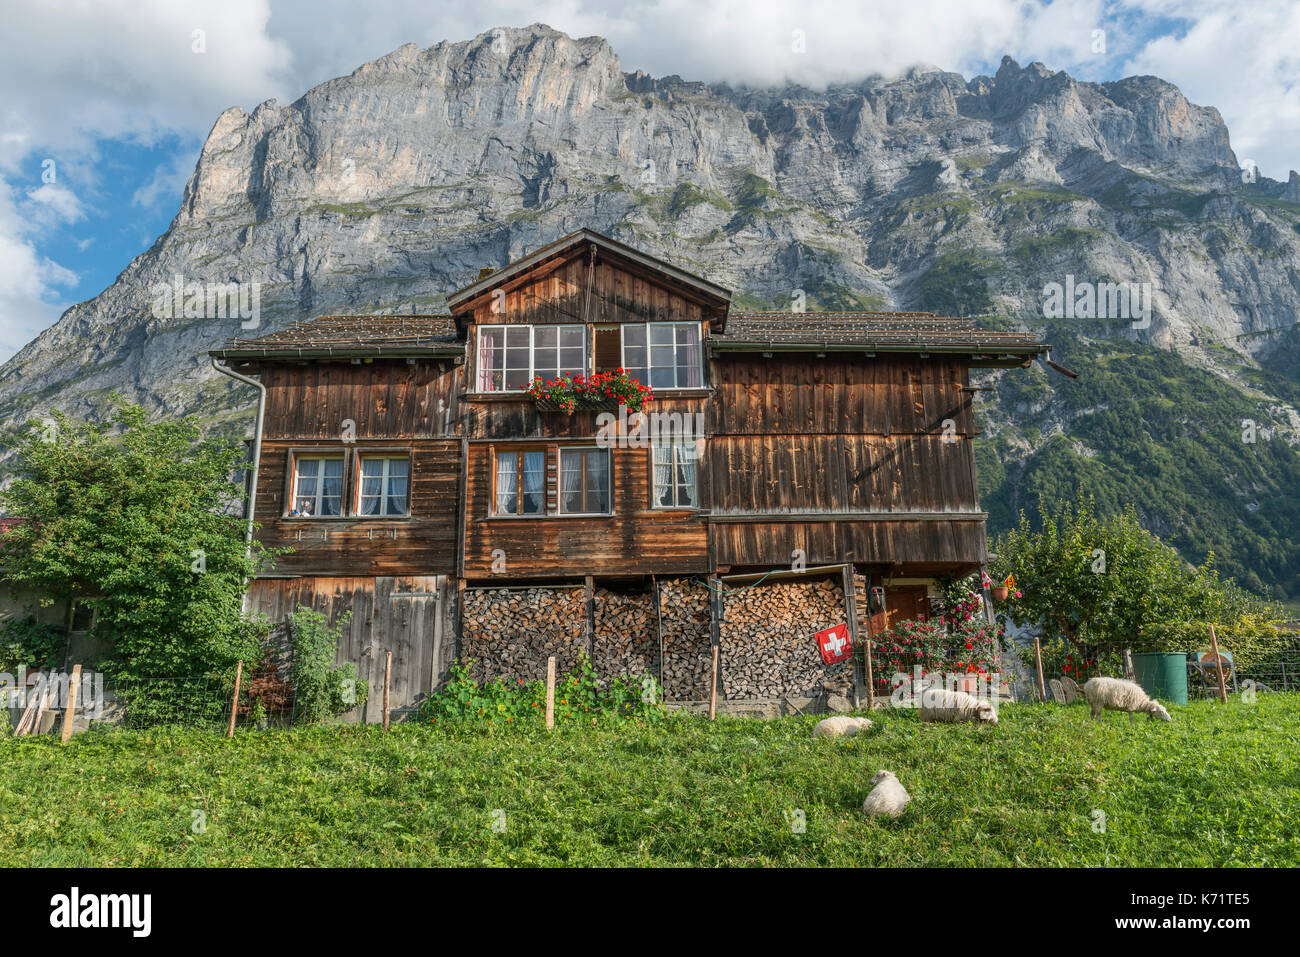 Casa alpina de madera tradicionales con ovejas pastando, Grindelwald, Suiza Foto de stock